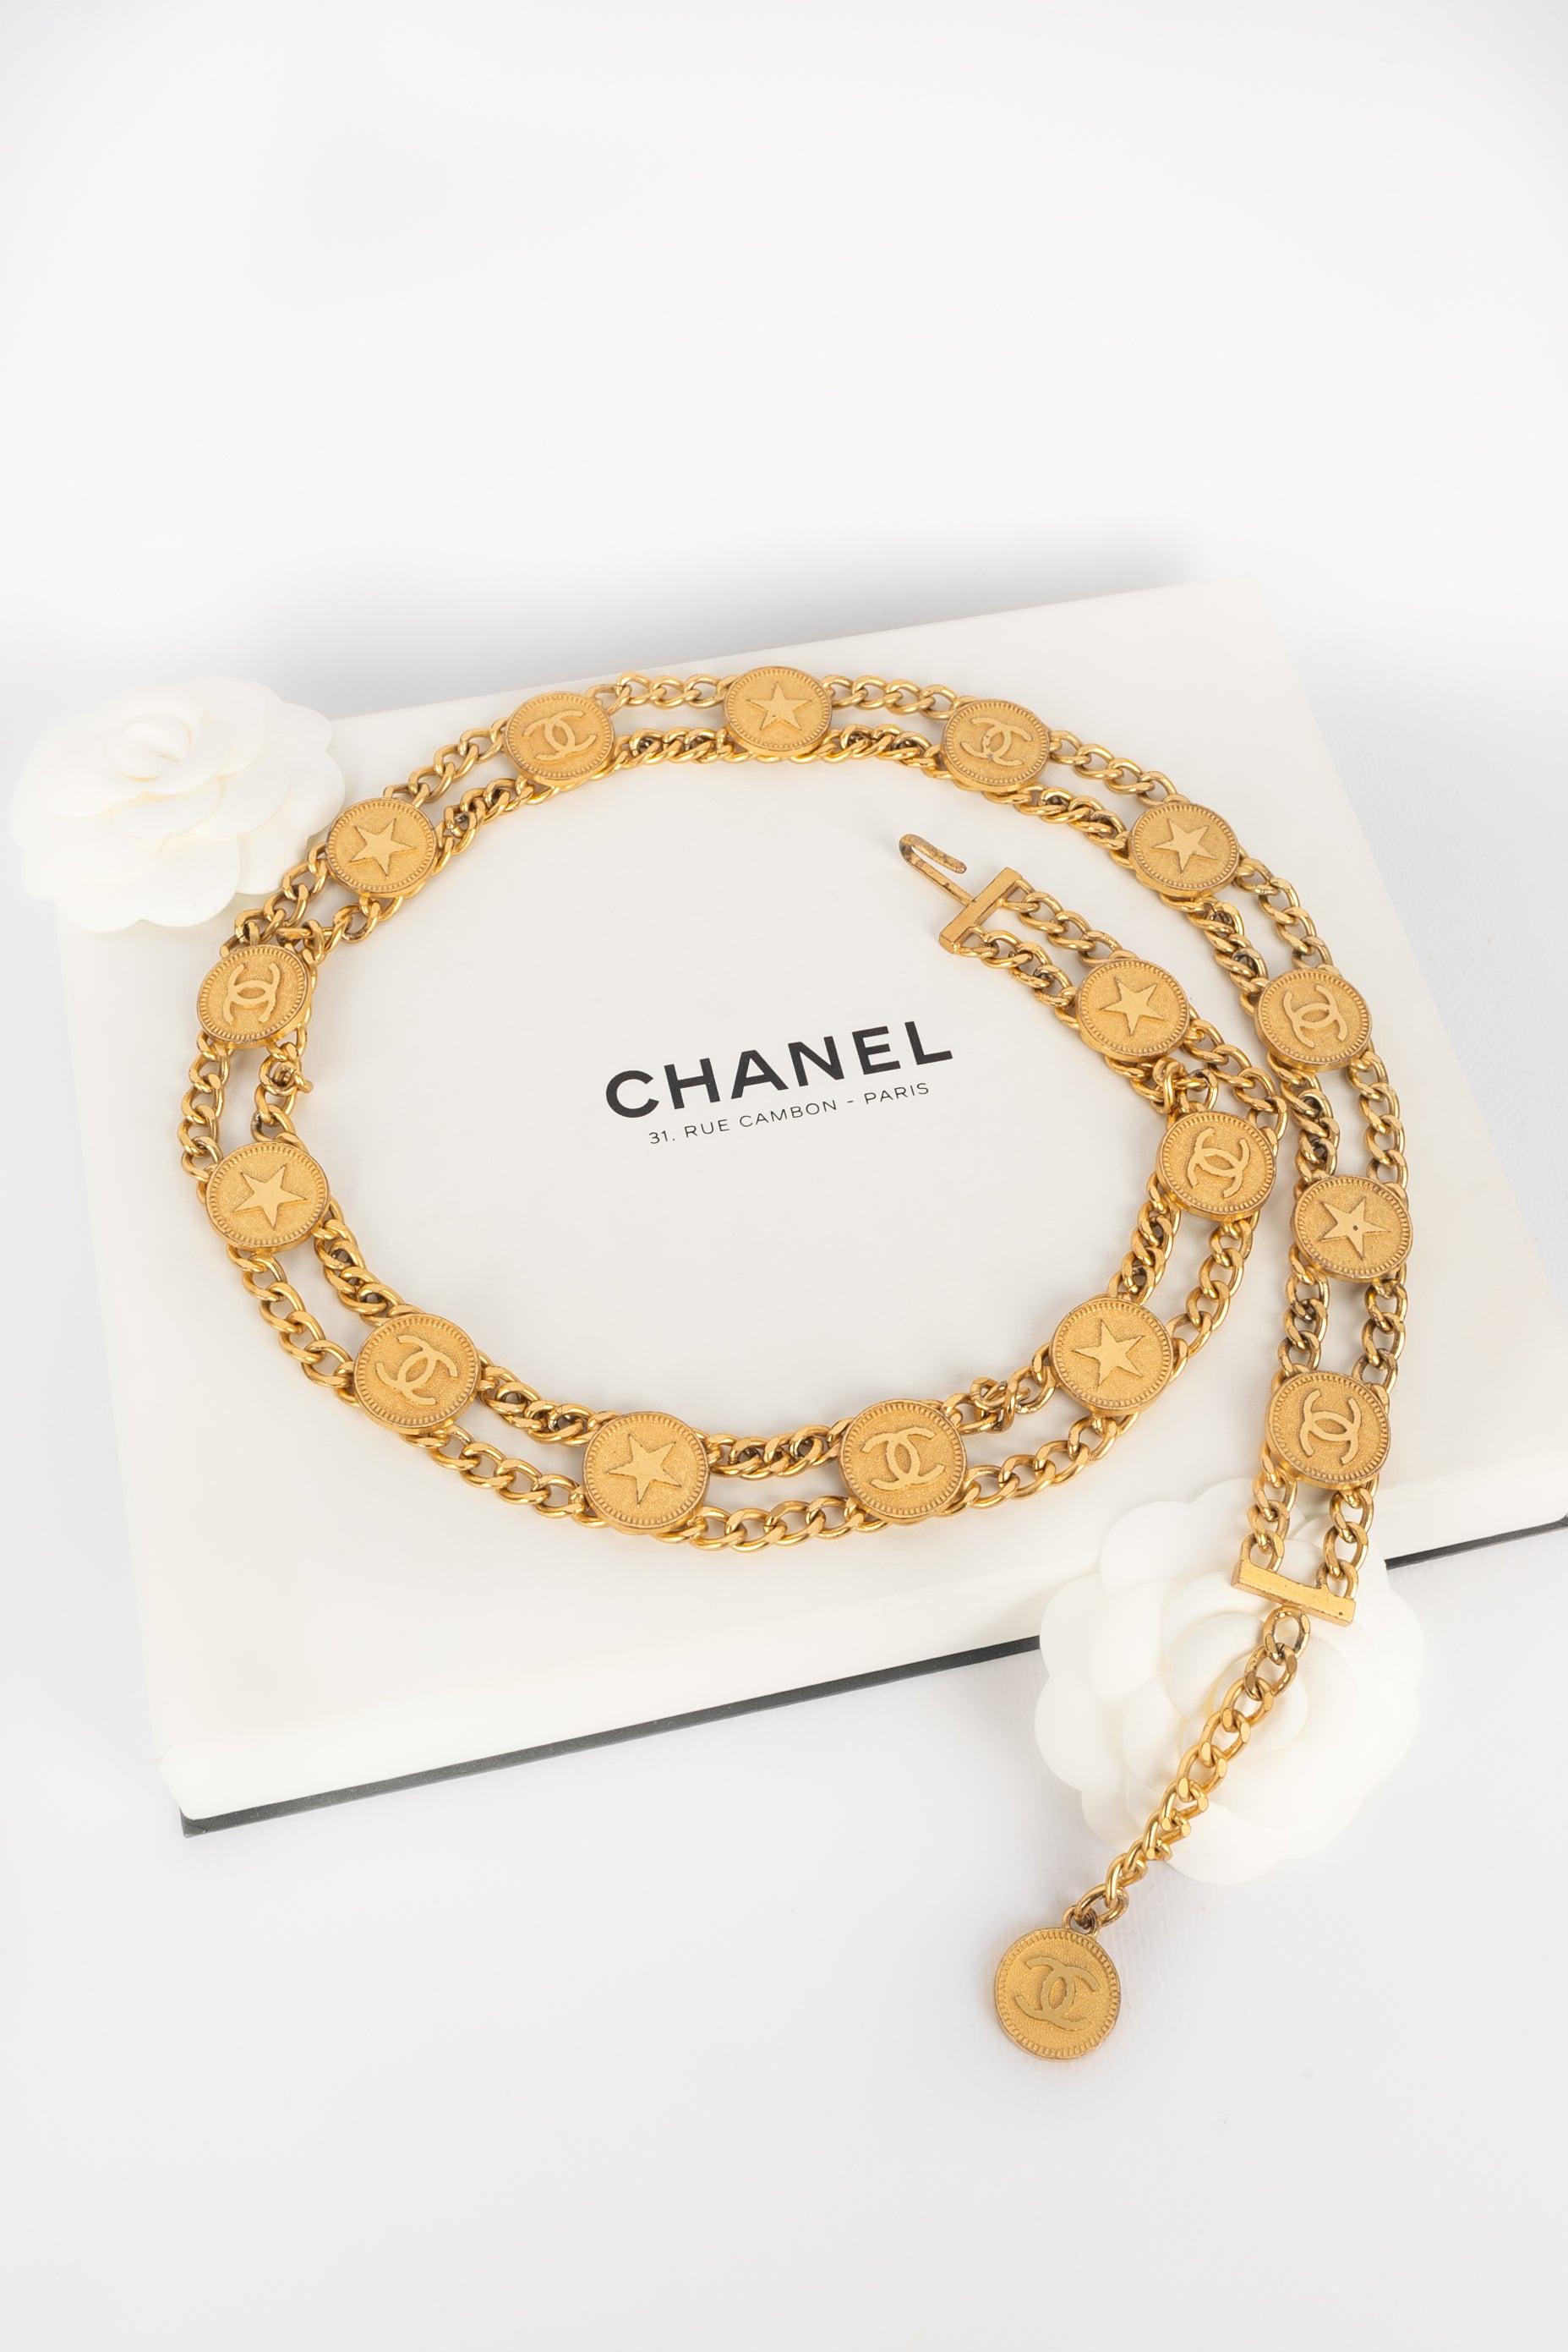 Chanel Golden Metal Belt, 2001 For Sale 1